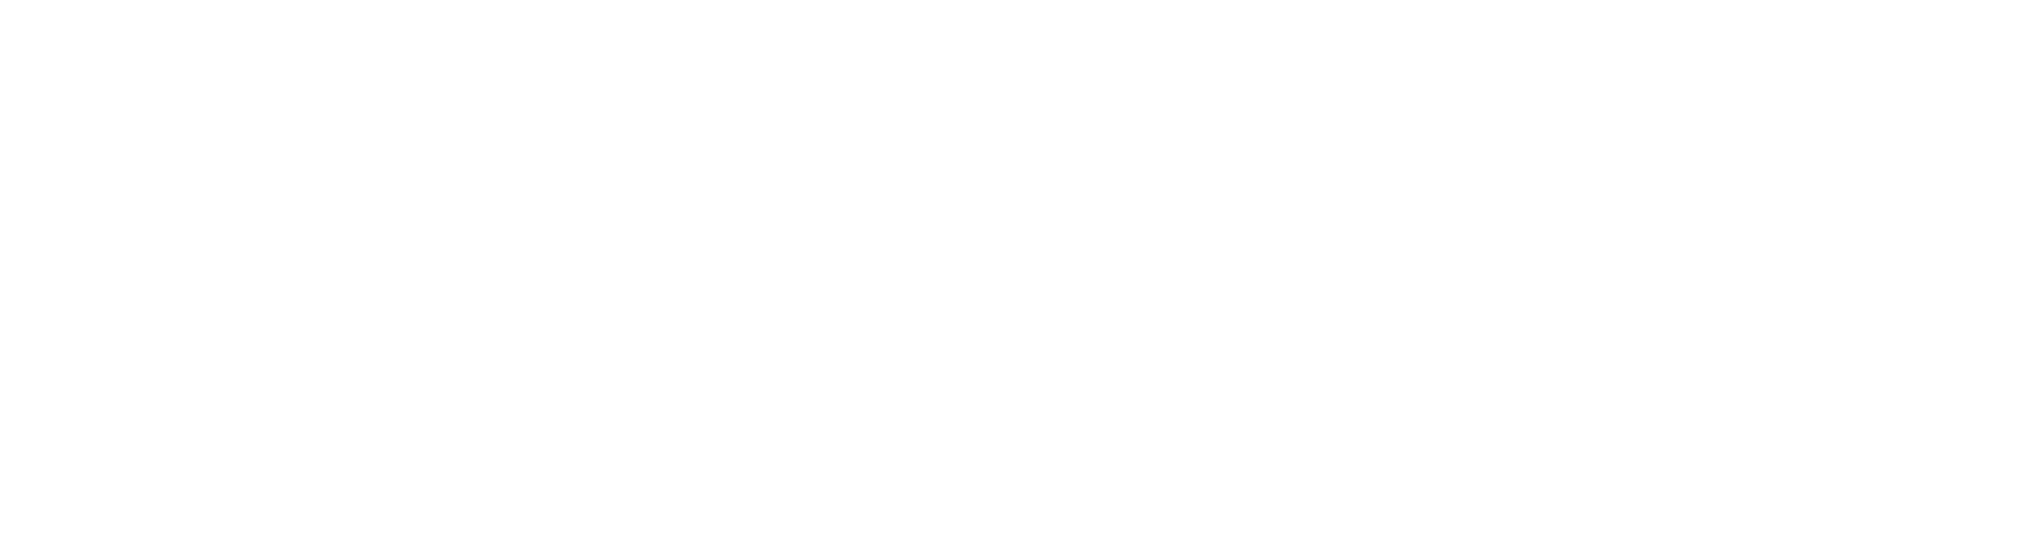 footer council logo